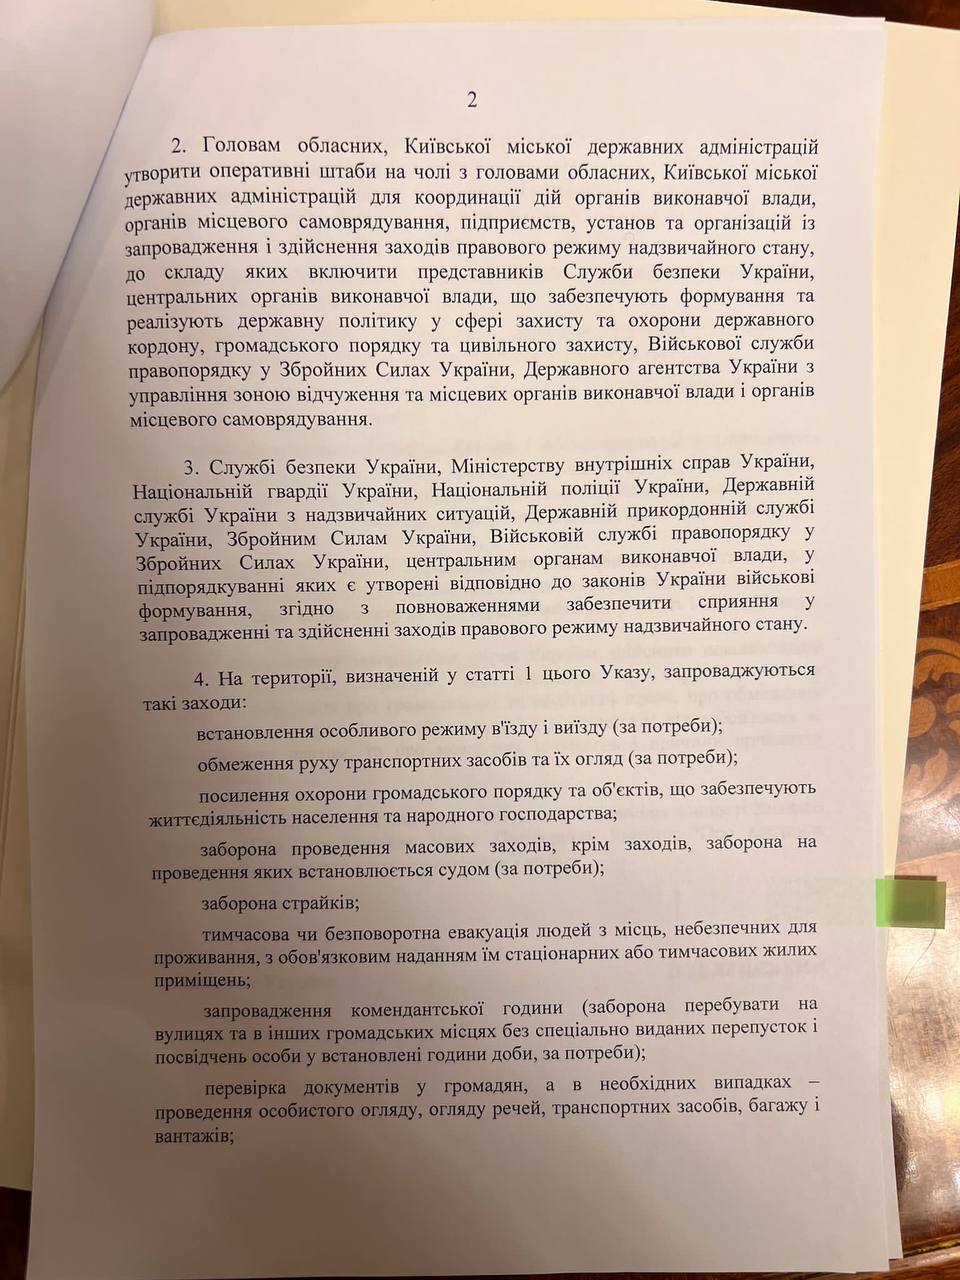 Рада затвердила надзвичайний стан в Україні: перелік обмежень